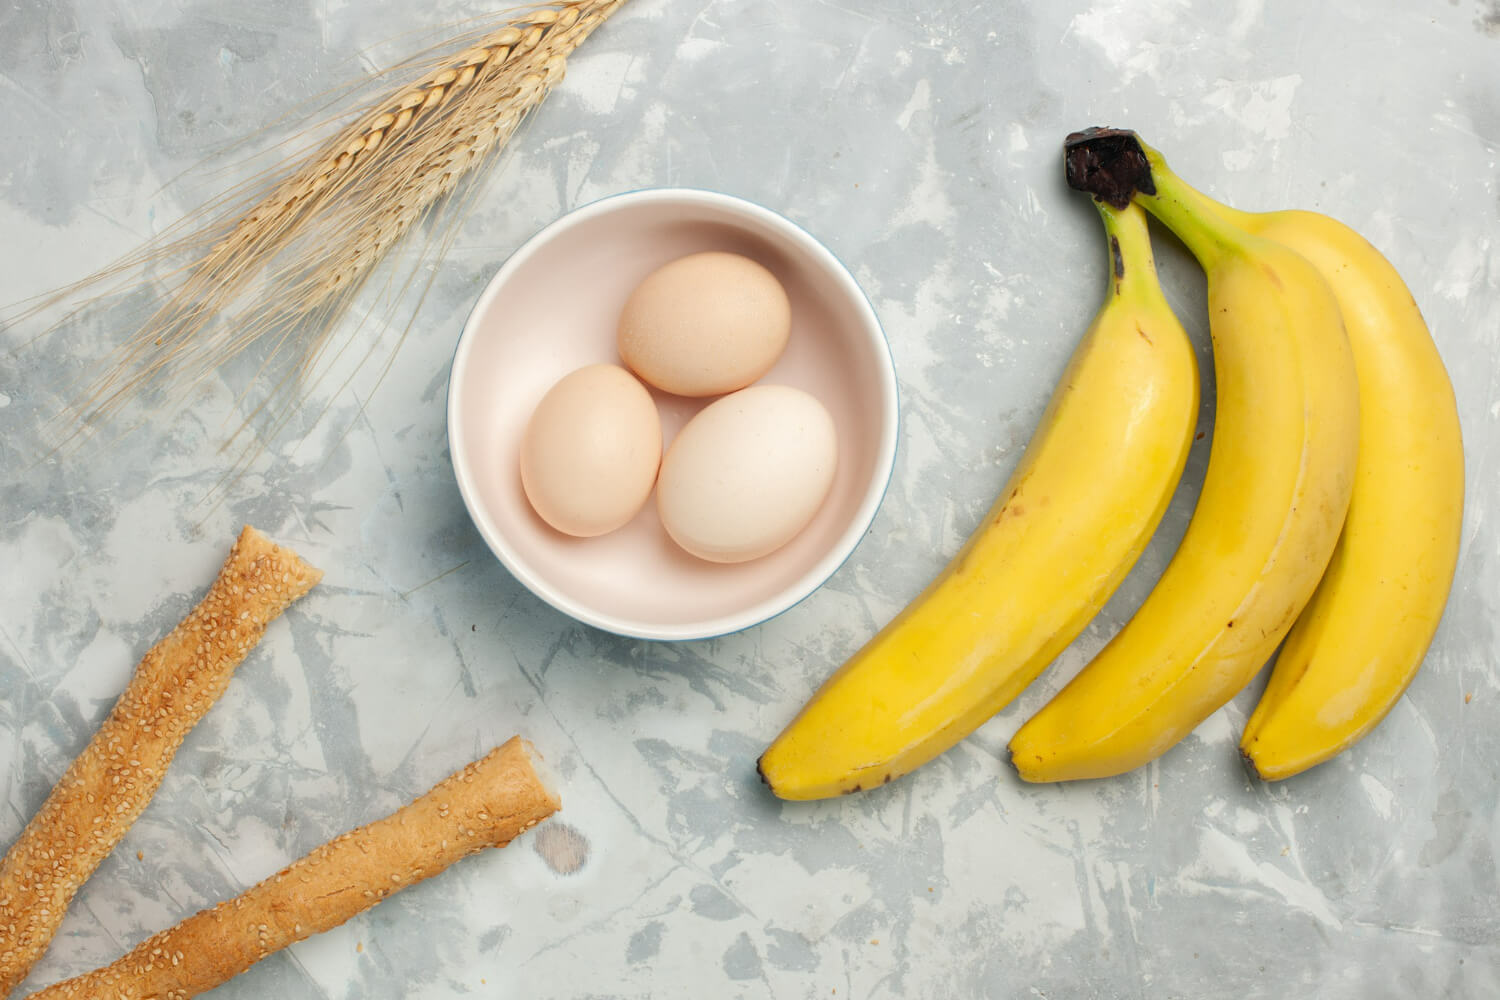 달걀 3개가 접시에 담겨있고 그 옆에 바나나가 놓여져 있다.